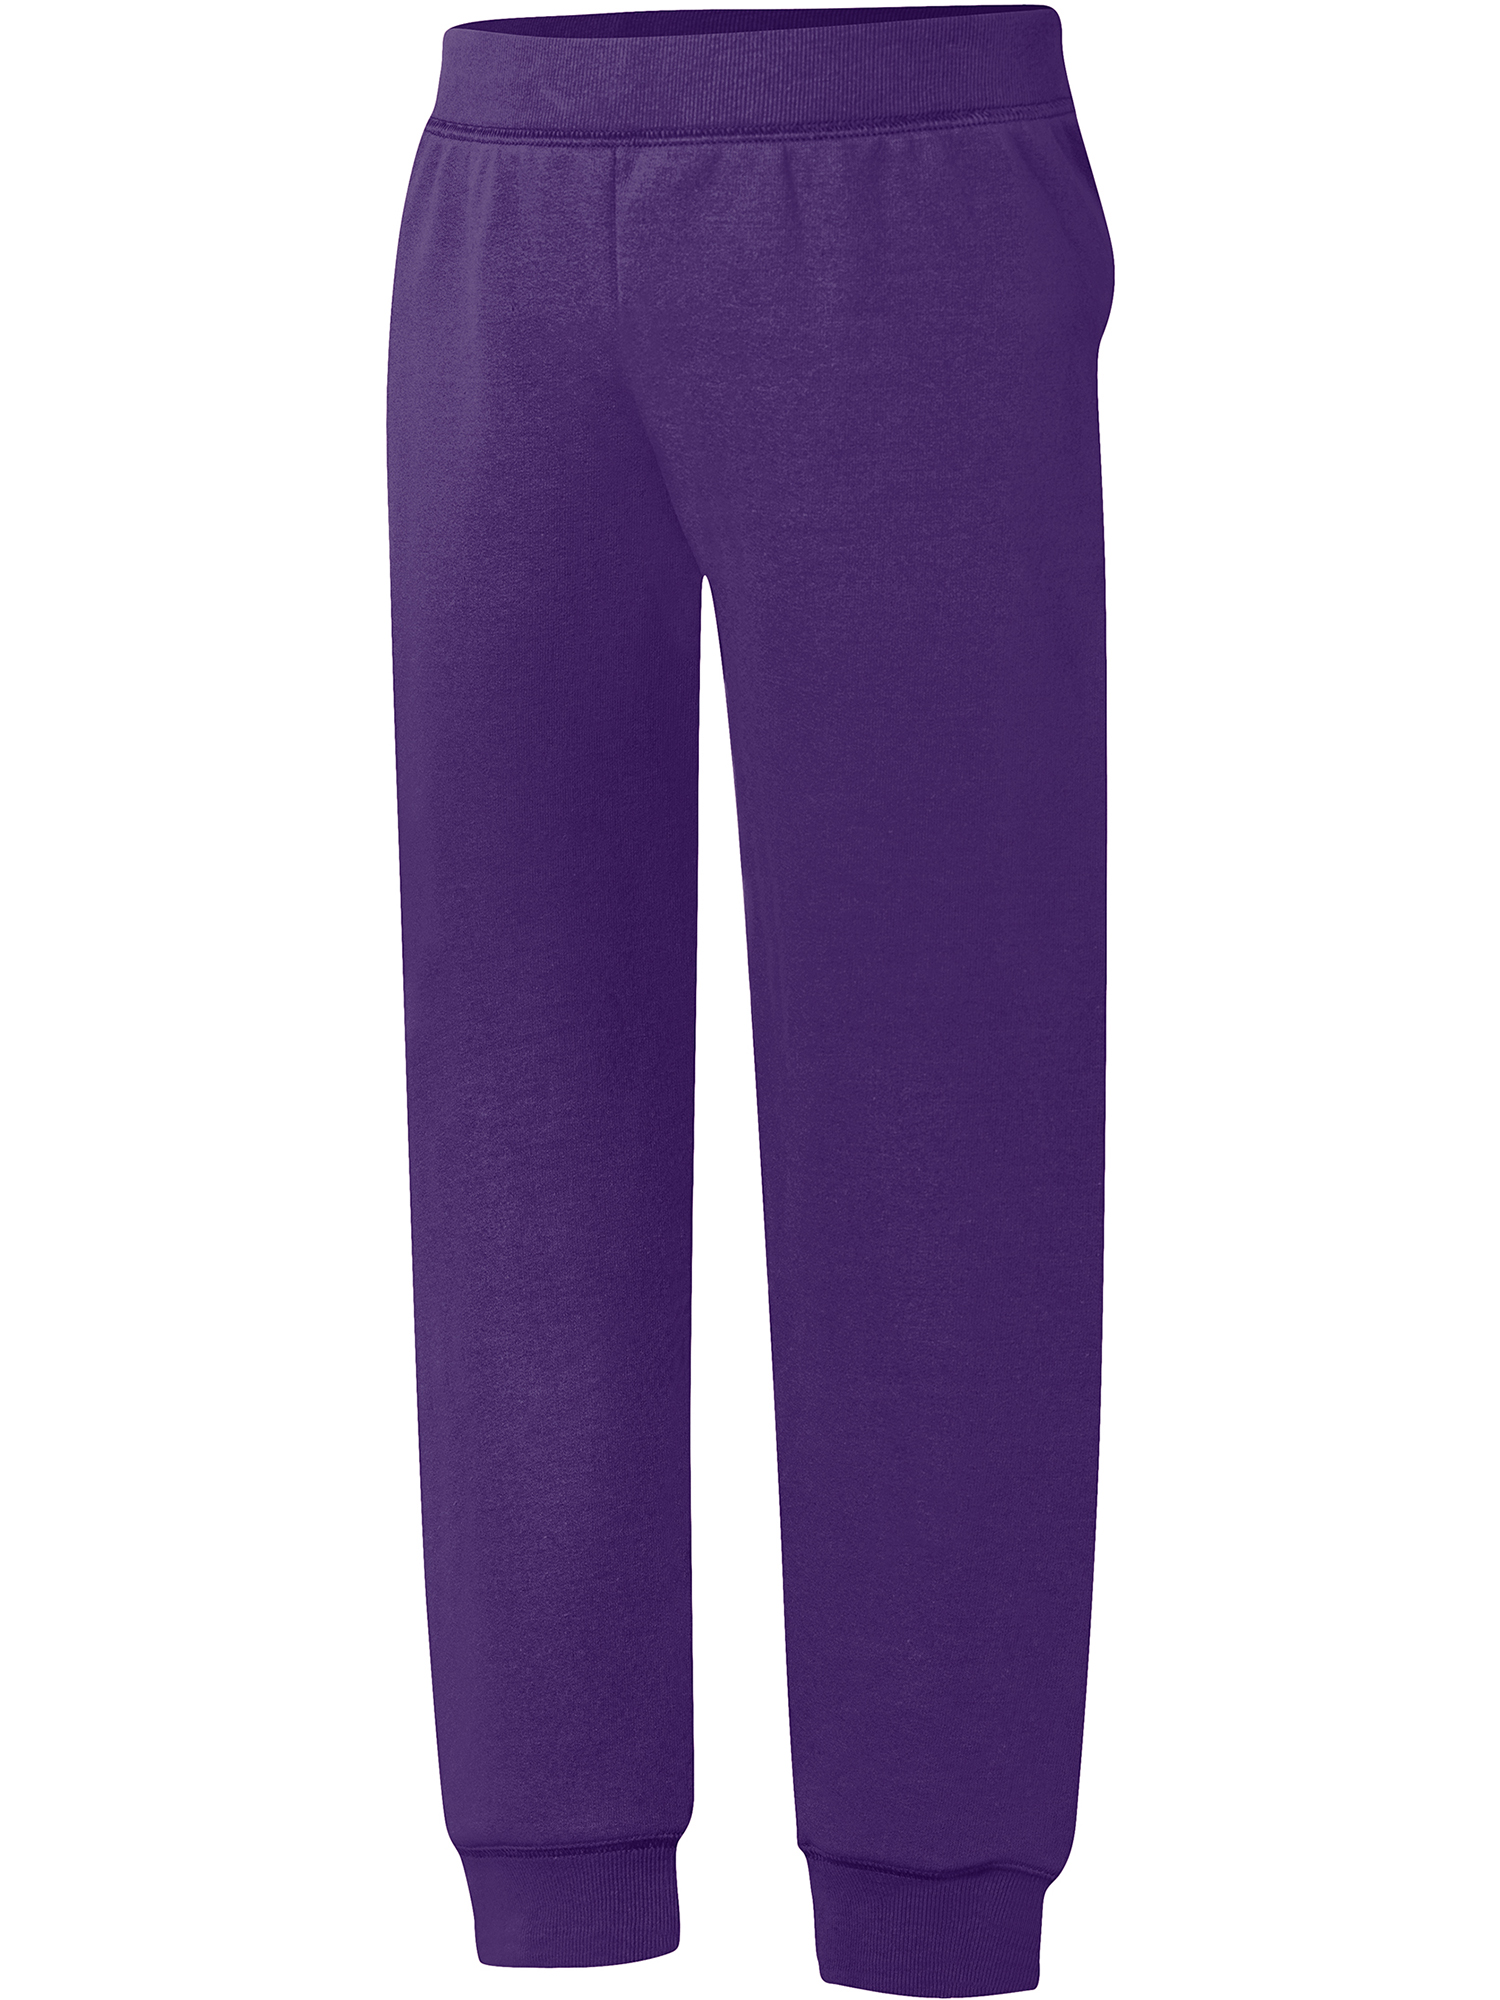 Hanes Girls ComfortSoft Eco Smart Fleece Jogger Sweatpants, Sizes 4-16 - image 1 of 4